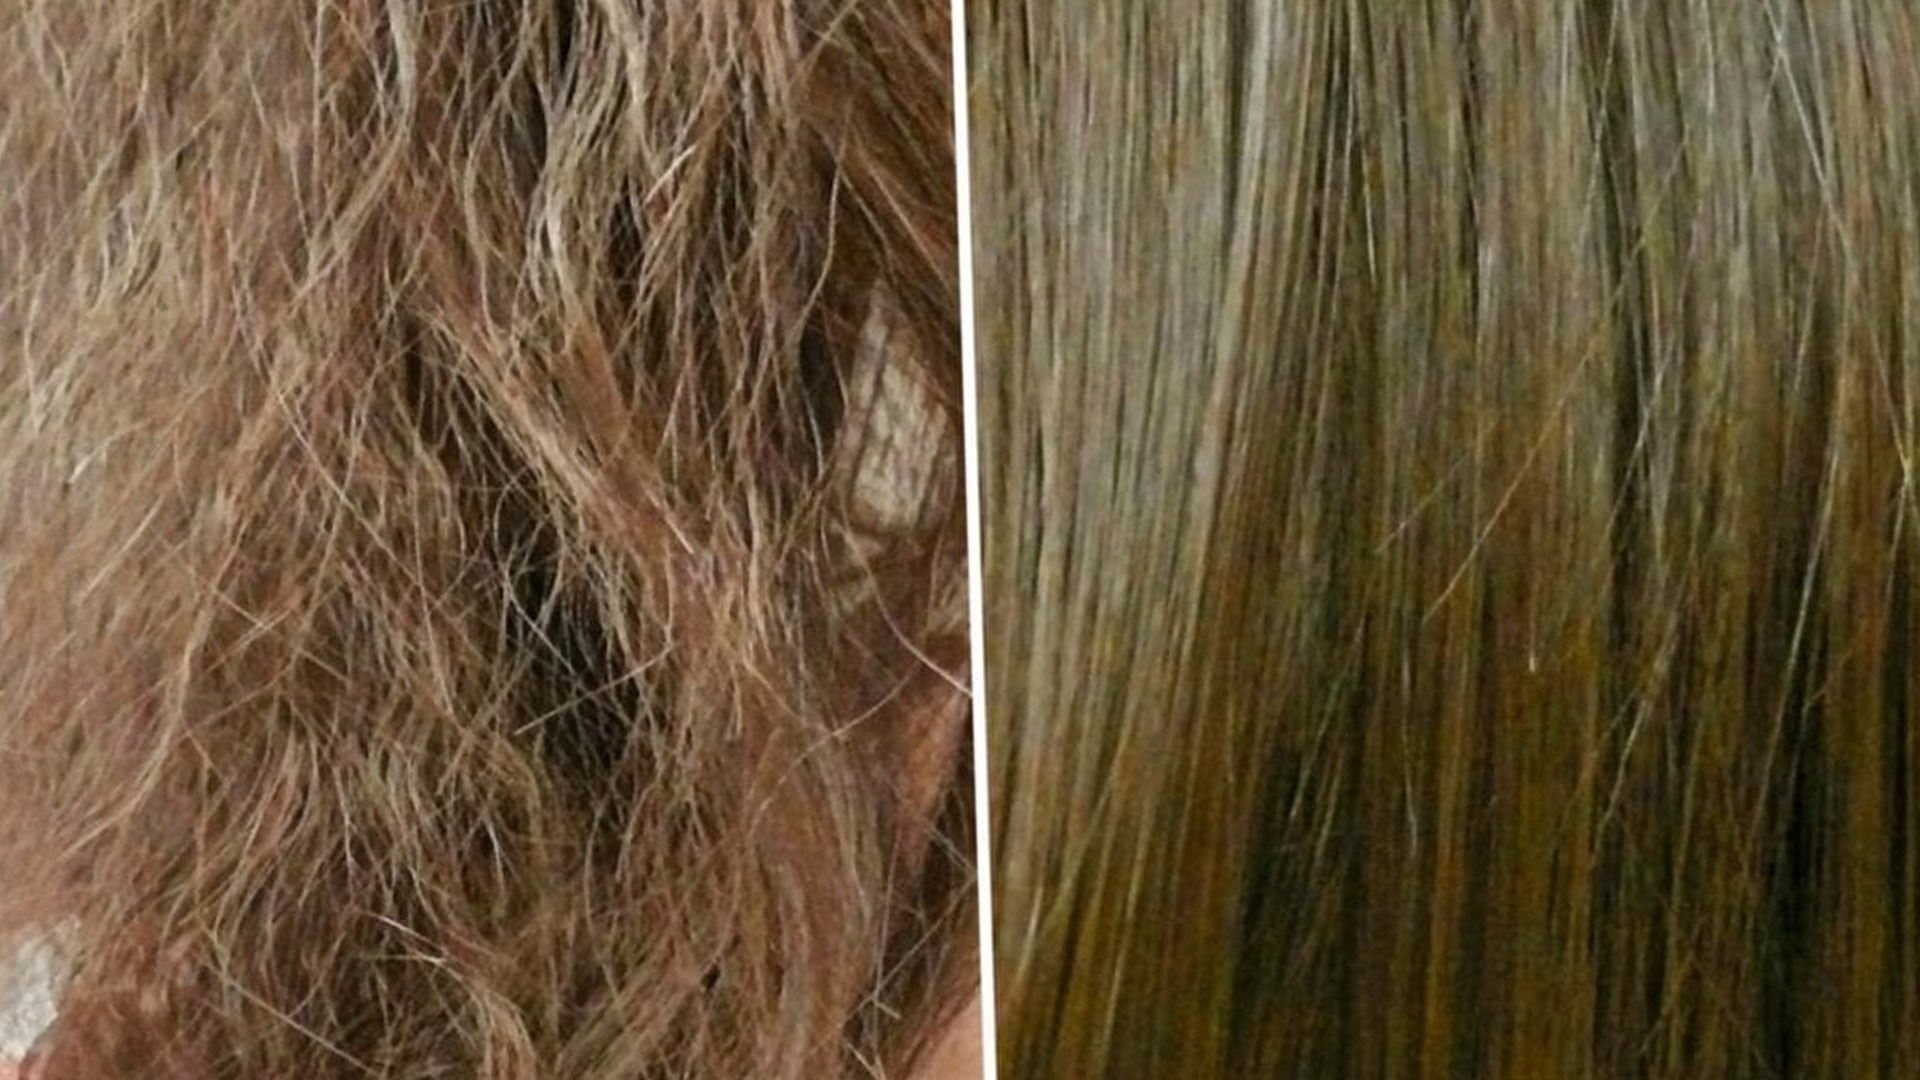 وصفات لتطويل الشعر والحفاظ على لمعانه لجعل الشعر طويل وخلاب